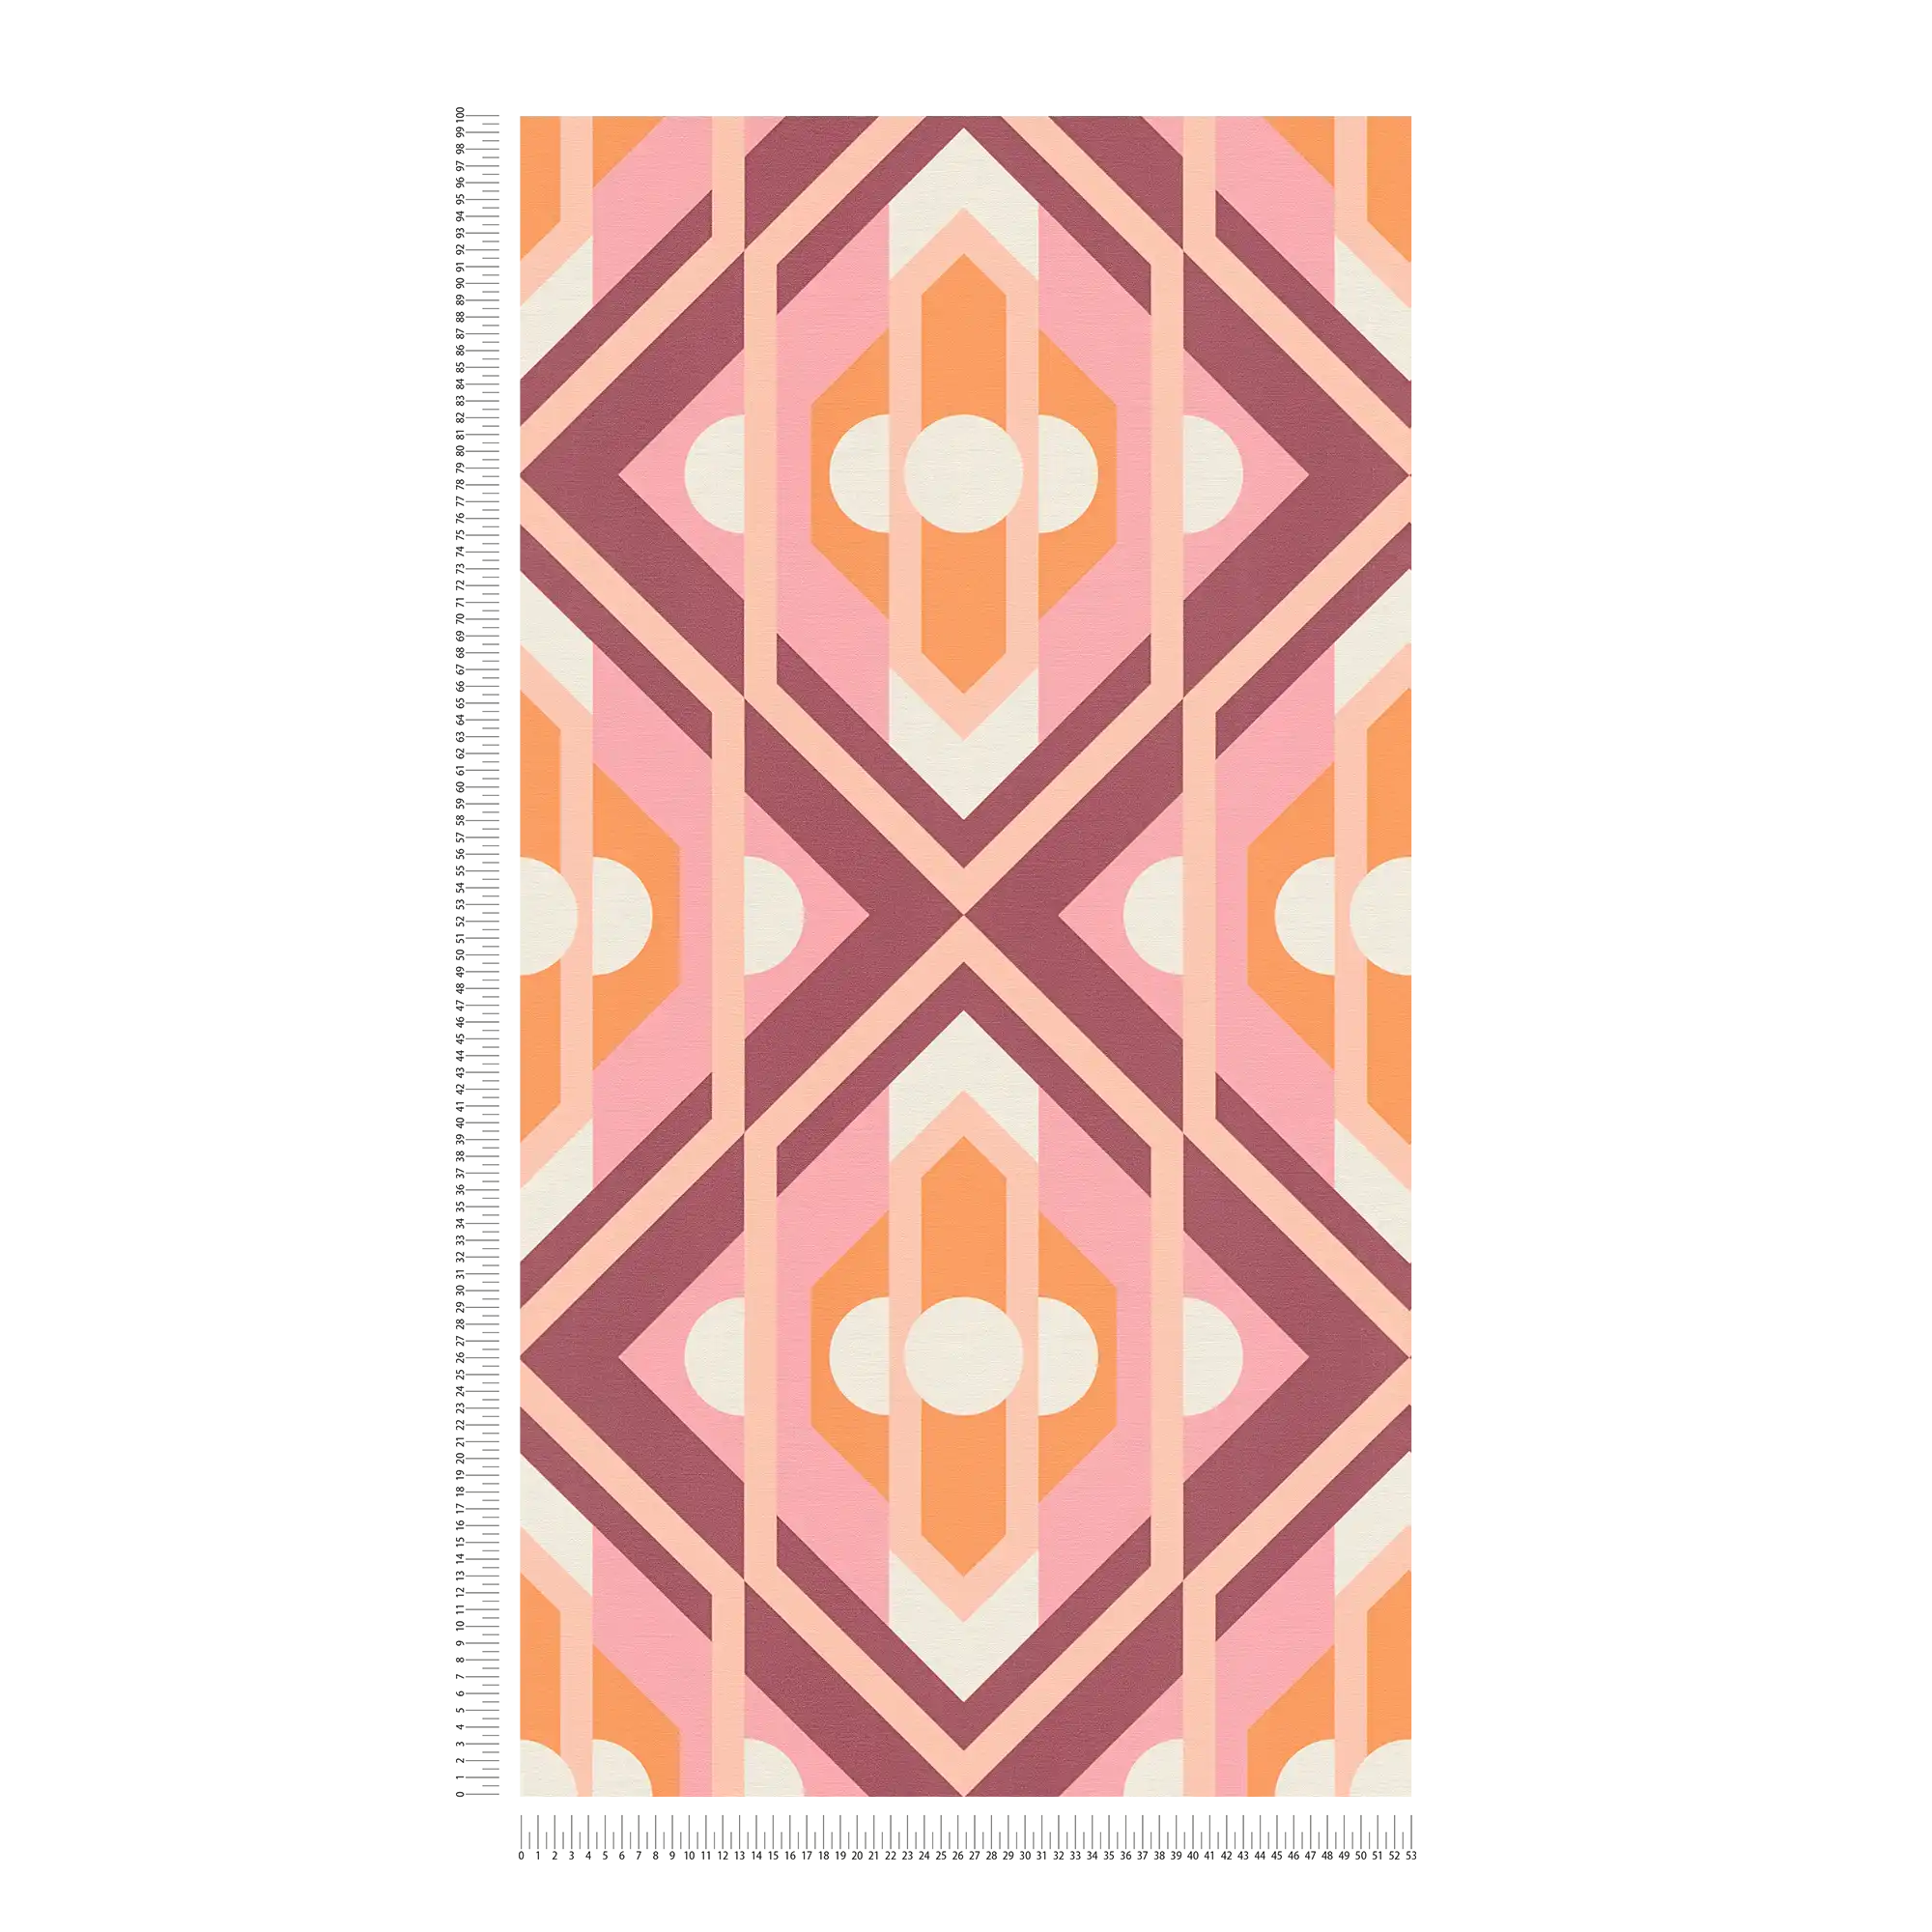             Vliestapete mit geometrischen Ornamenten im Retro Stil – Orange, Rosa, Weiß
        